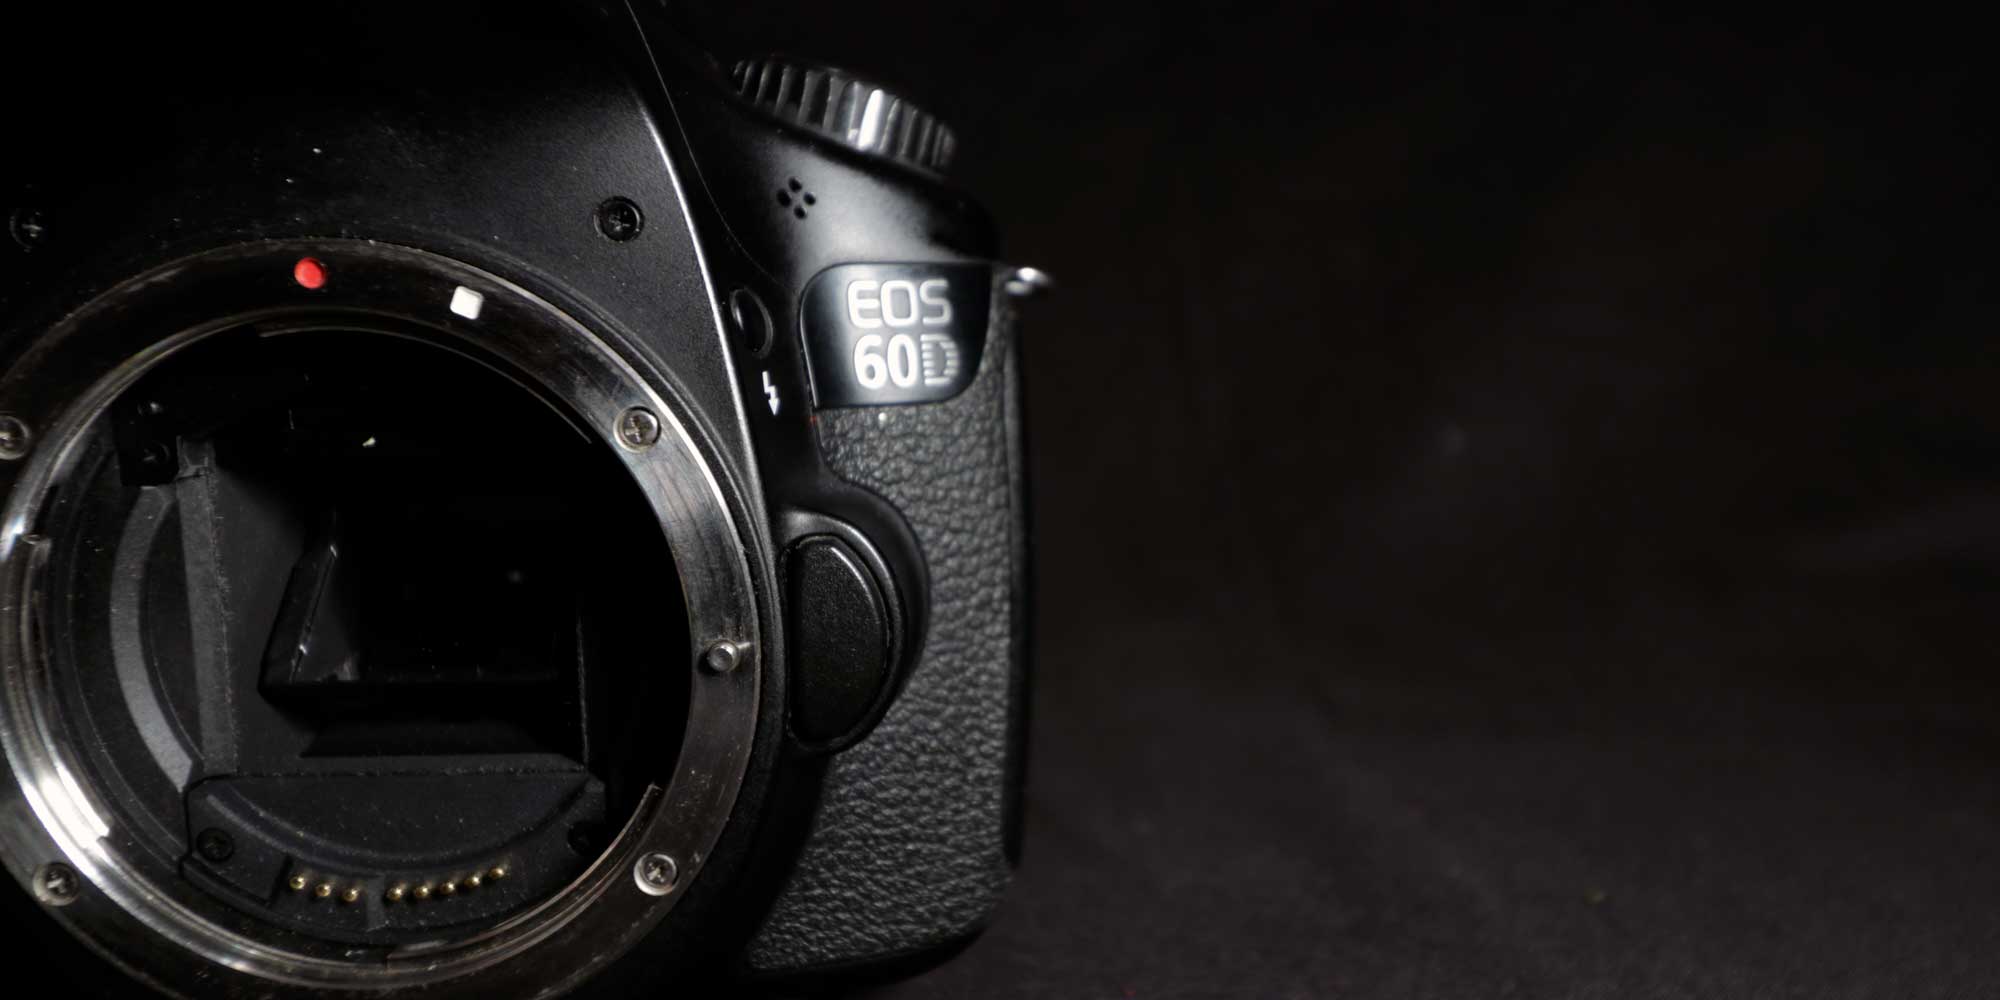 Top 7 Best Lenses For Canon Eos 60d, Best Lens For Landscape Photography Canon 60d